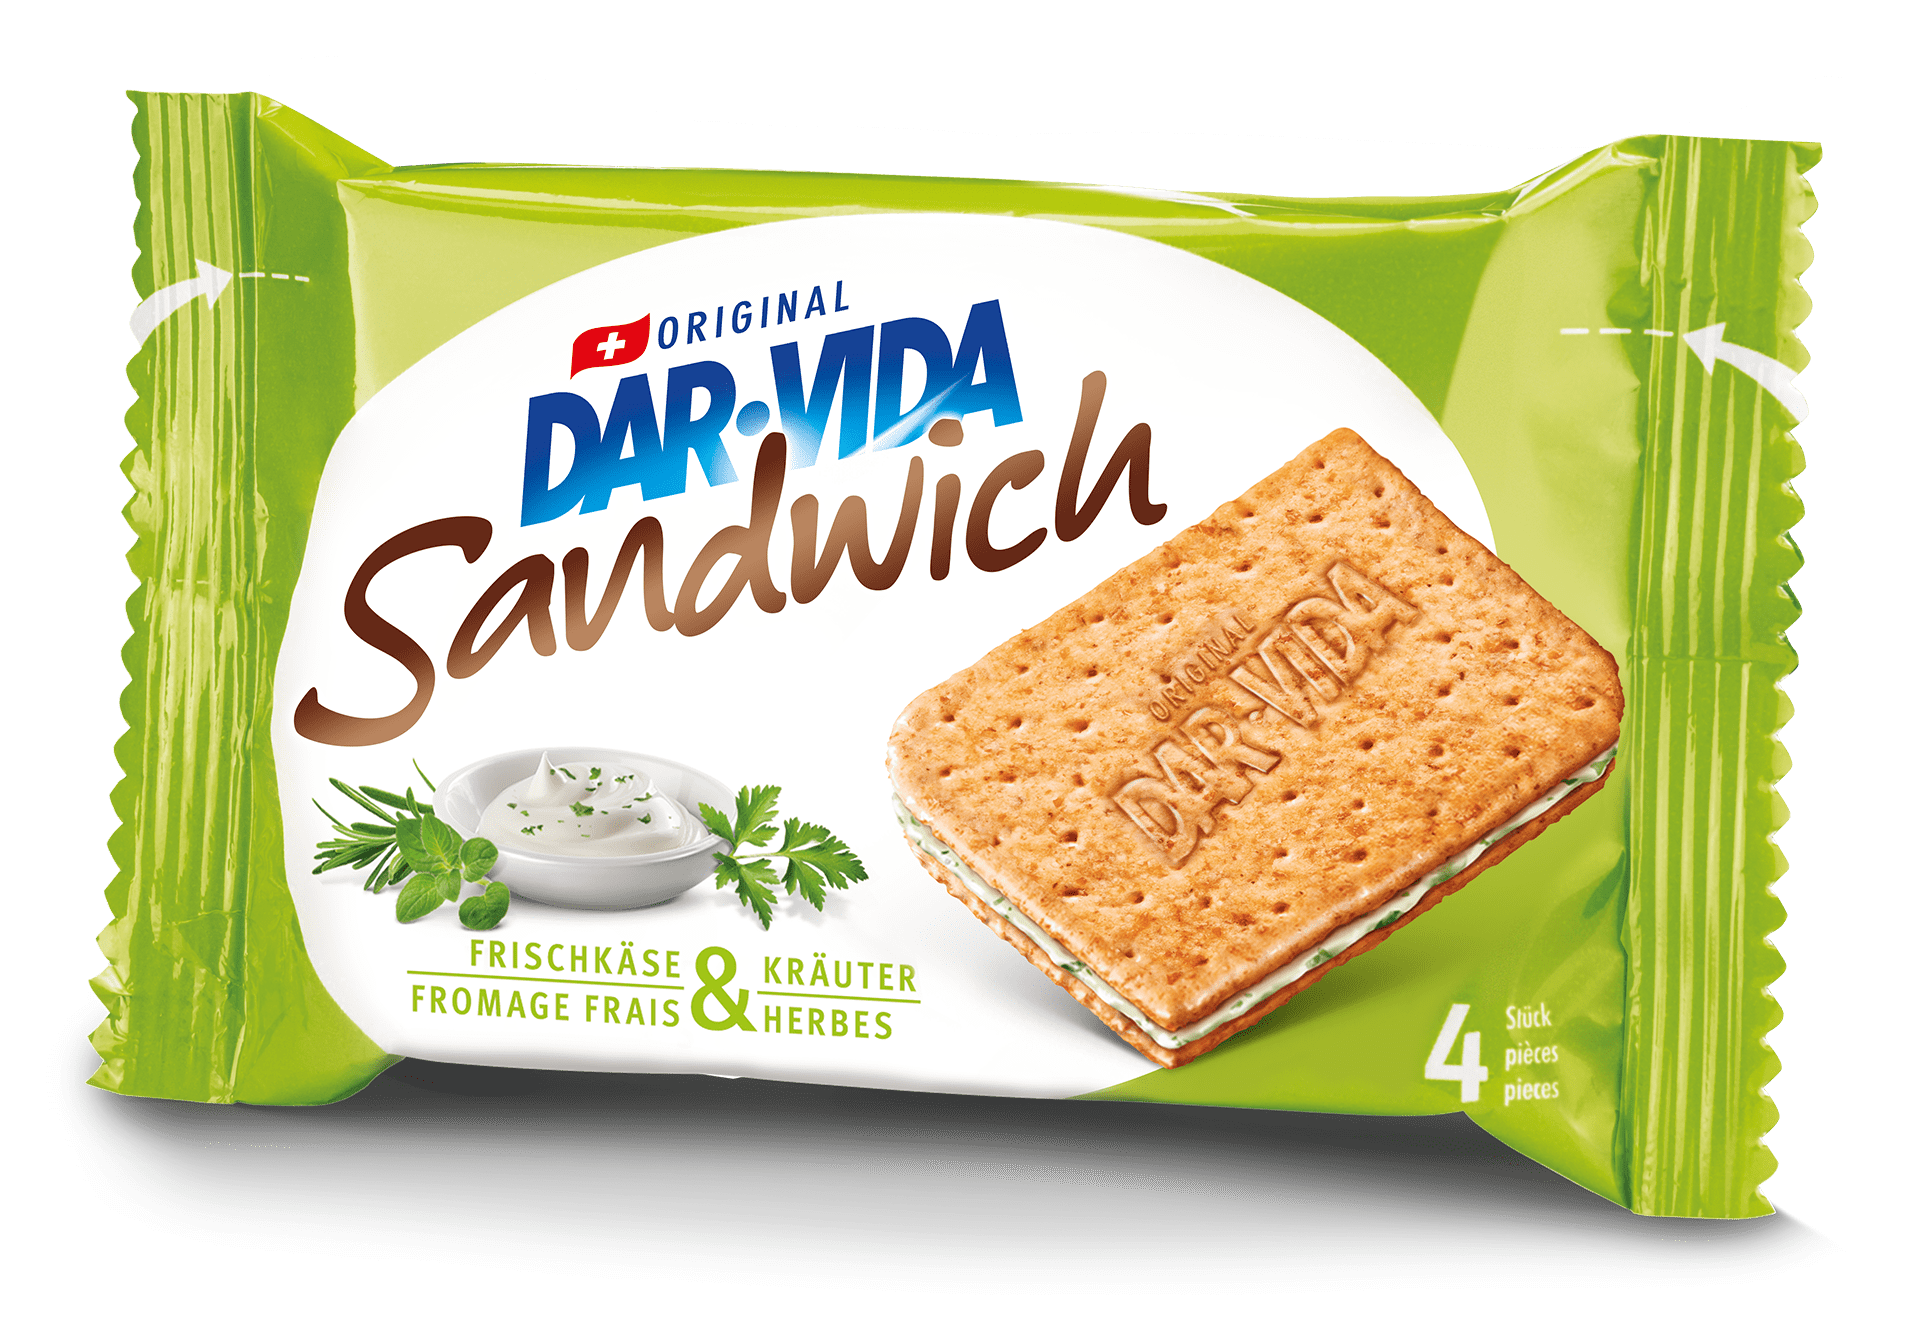 DAR-VIDA Sandwich Frischkäse & Kräuter